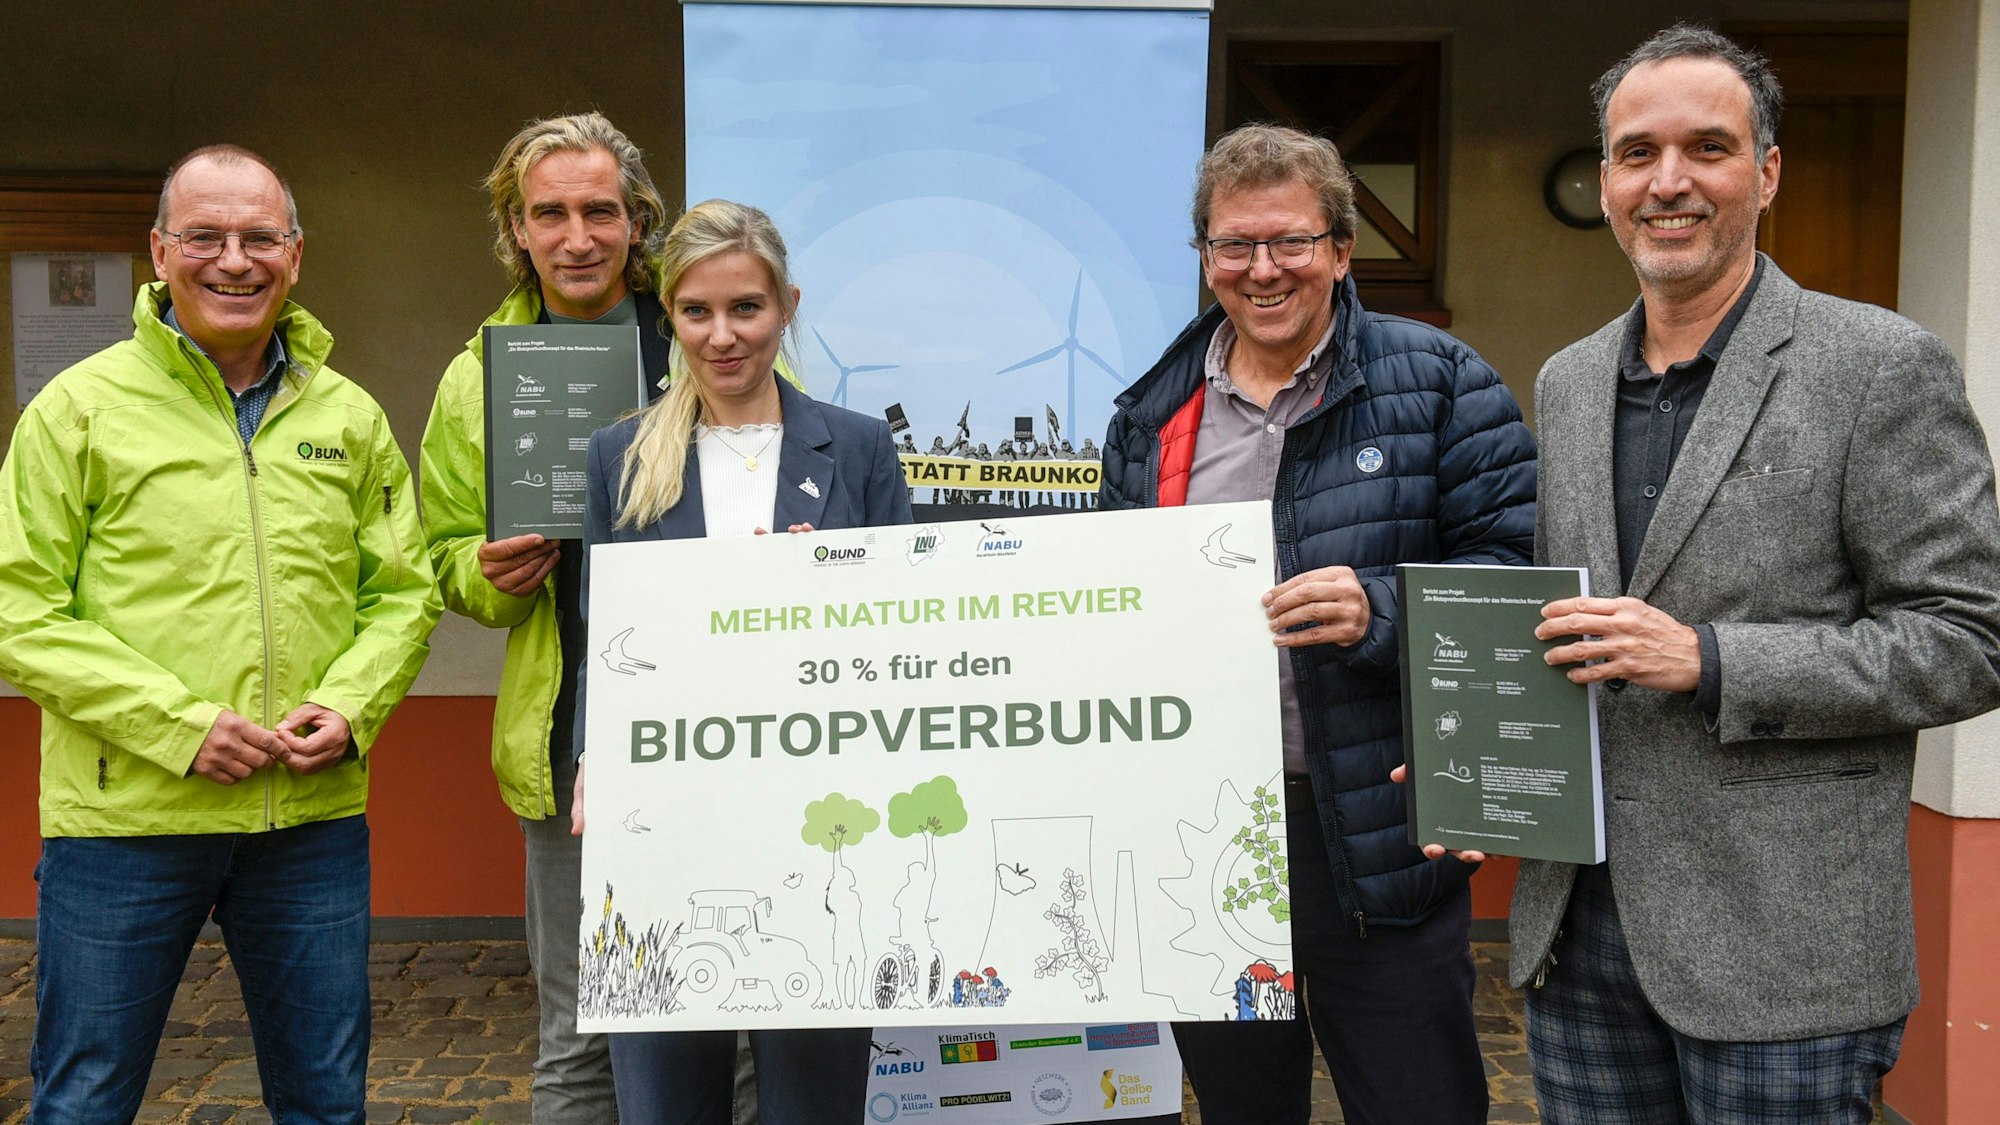 Auf dem Foto sind Vertreter der Naturschutzverbände BUND und NABU zu sehen. Auf einem Schild, das sie festhalten, ist zu lesen „Mehr Natur im Revier. 30 Prozent für den Biotopverbund“.